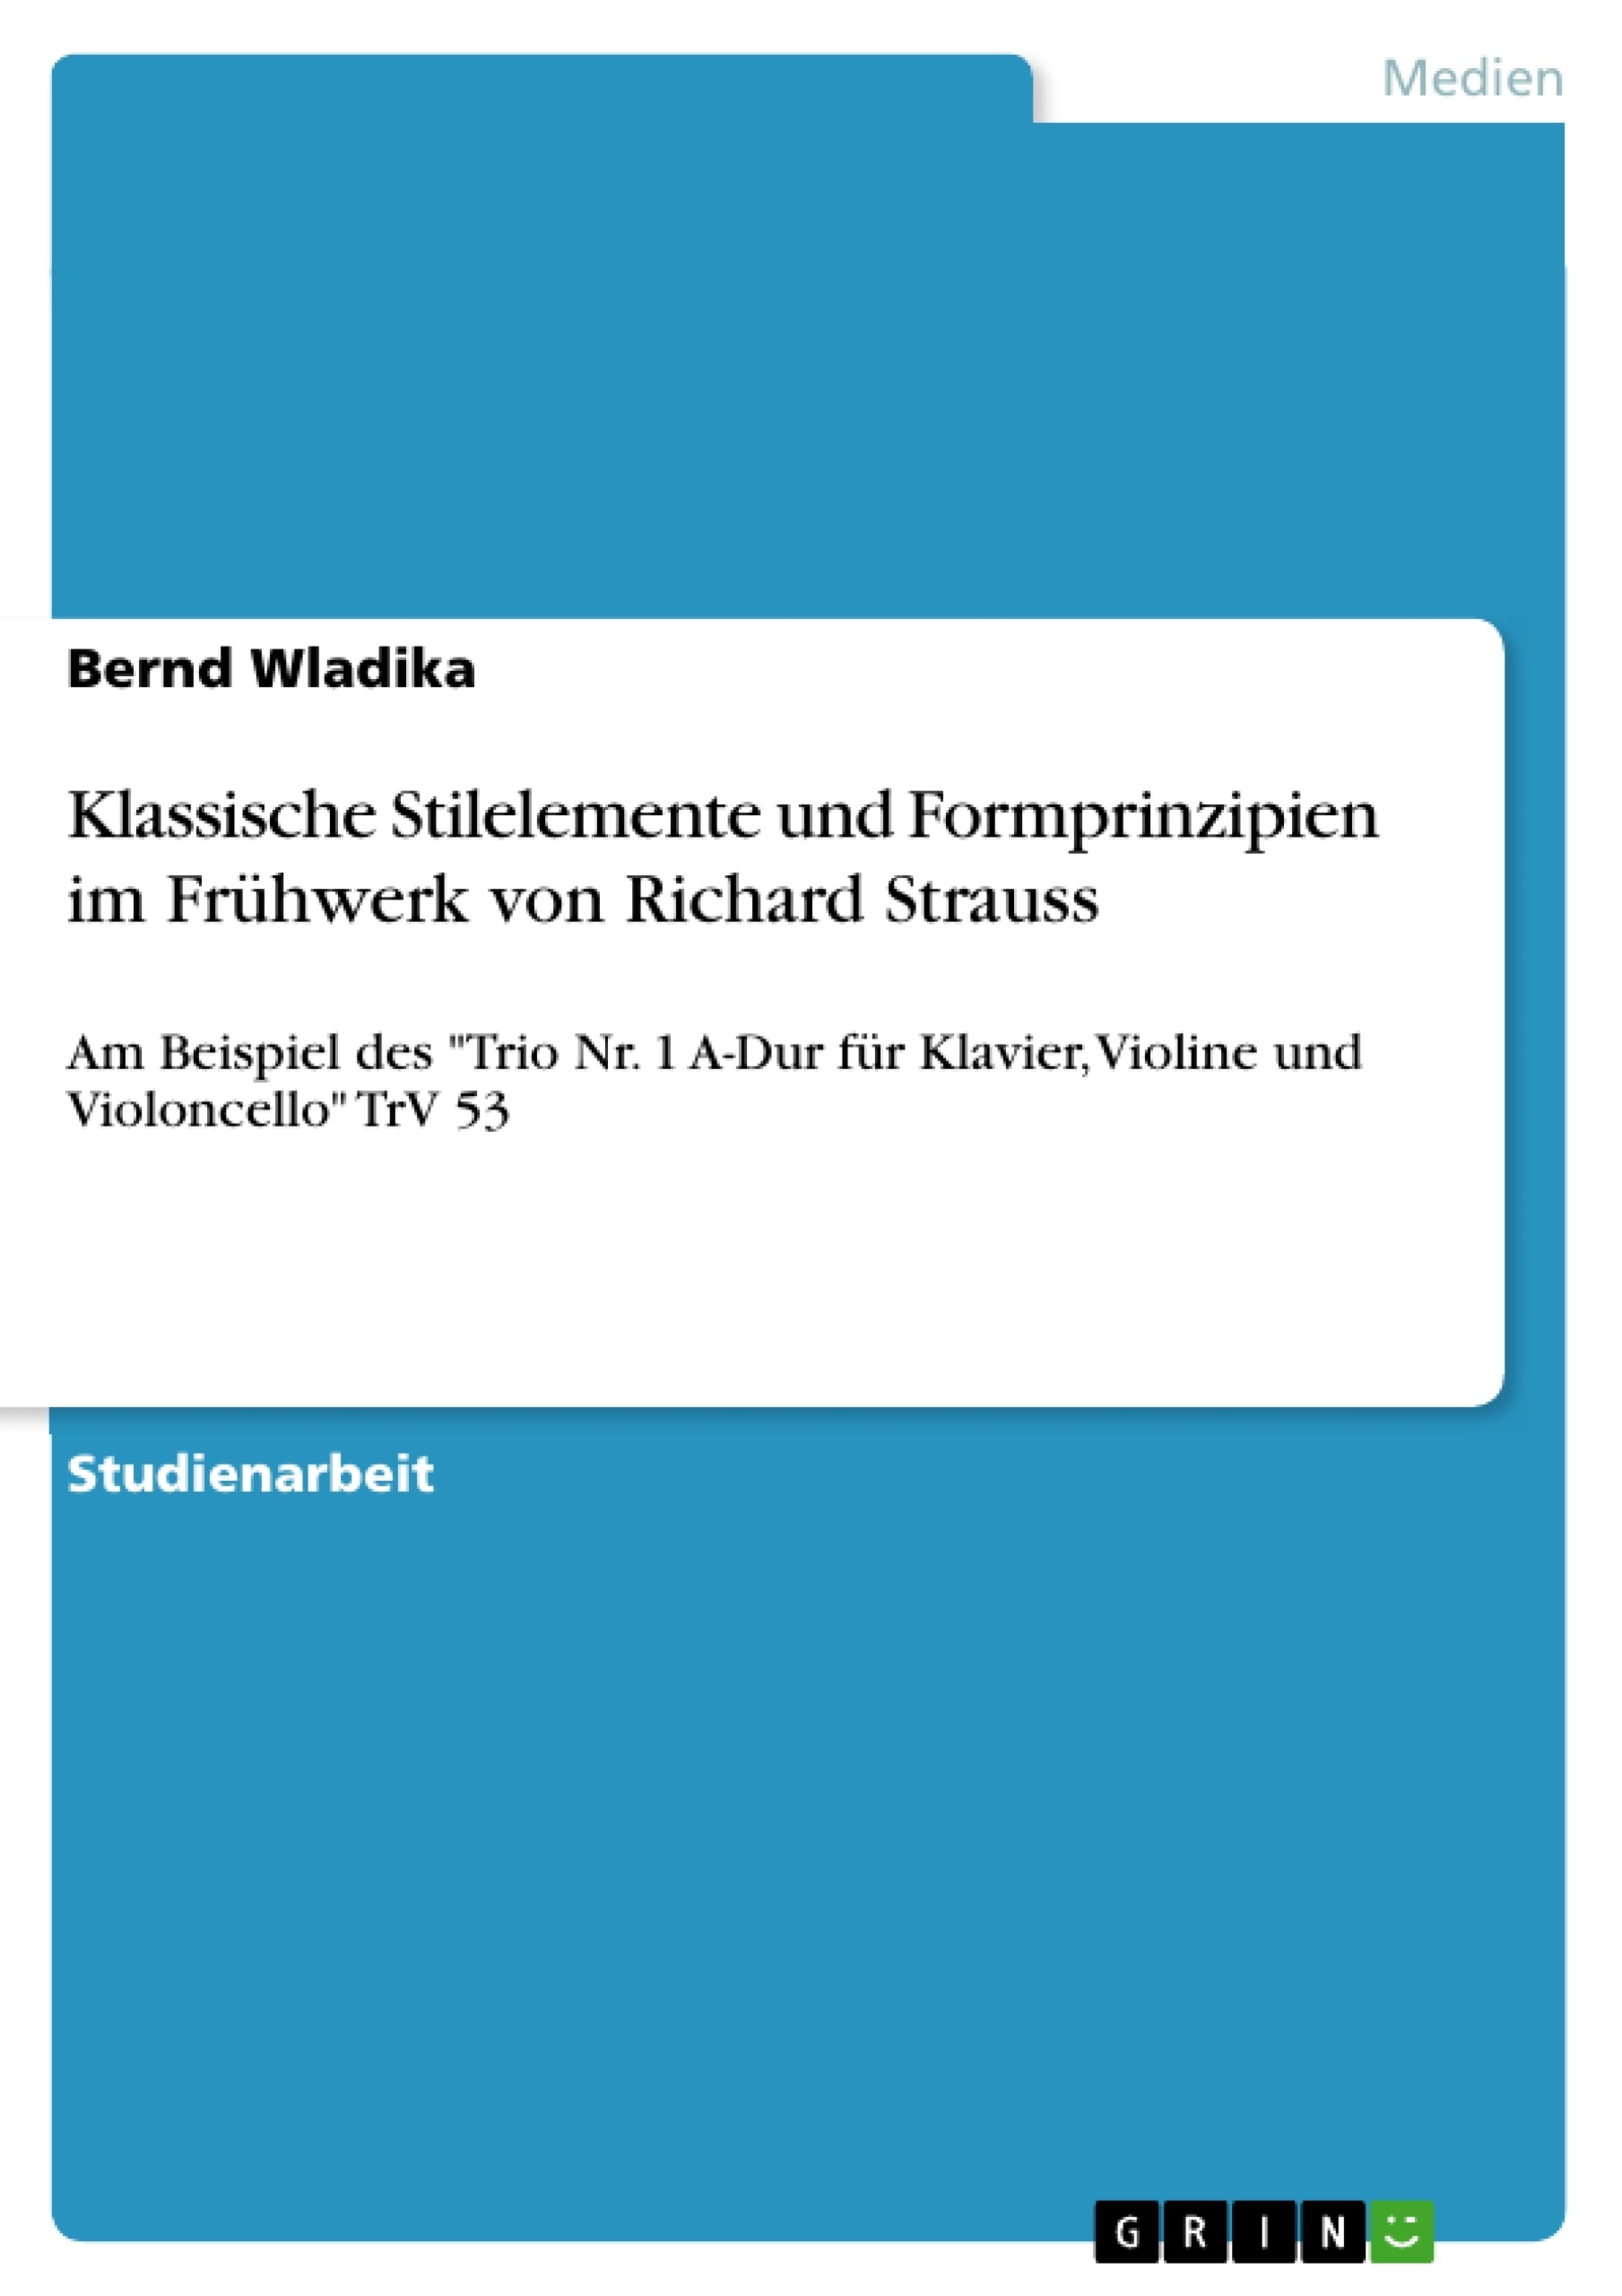 Title: Klassische Stilelemente und Formprinzipien im Frühwerk von Richard Strauss